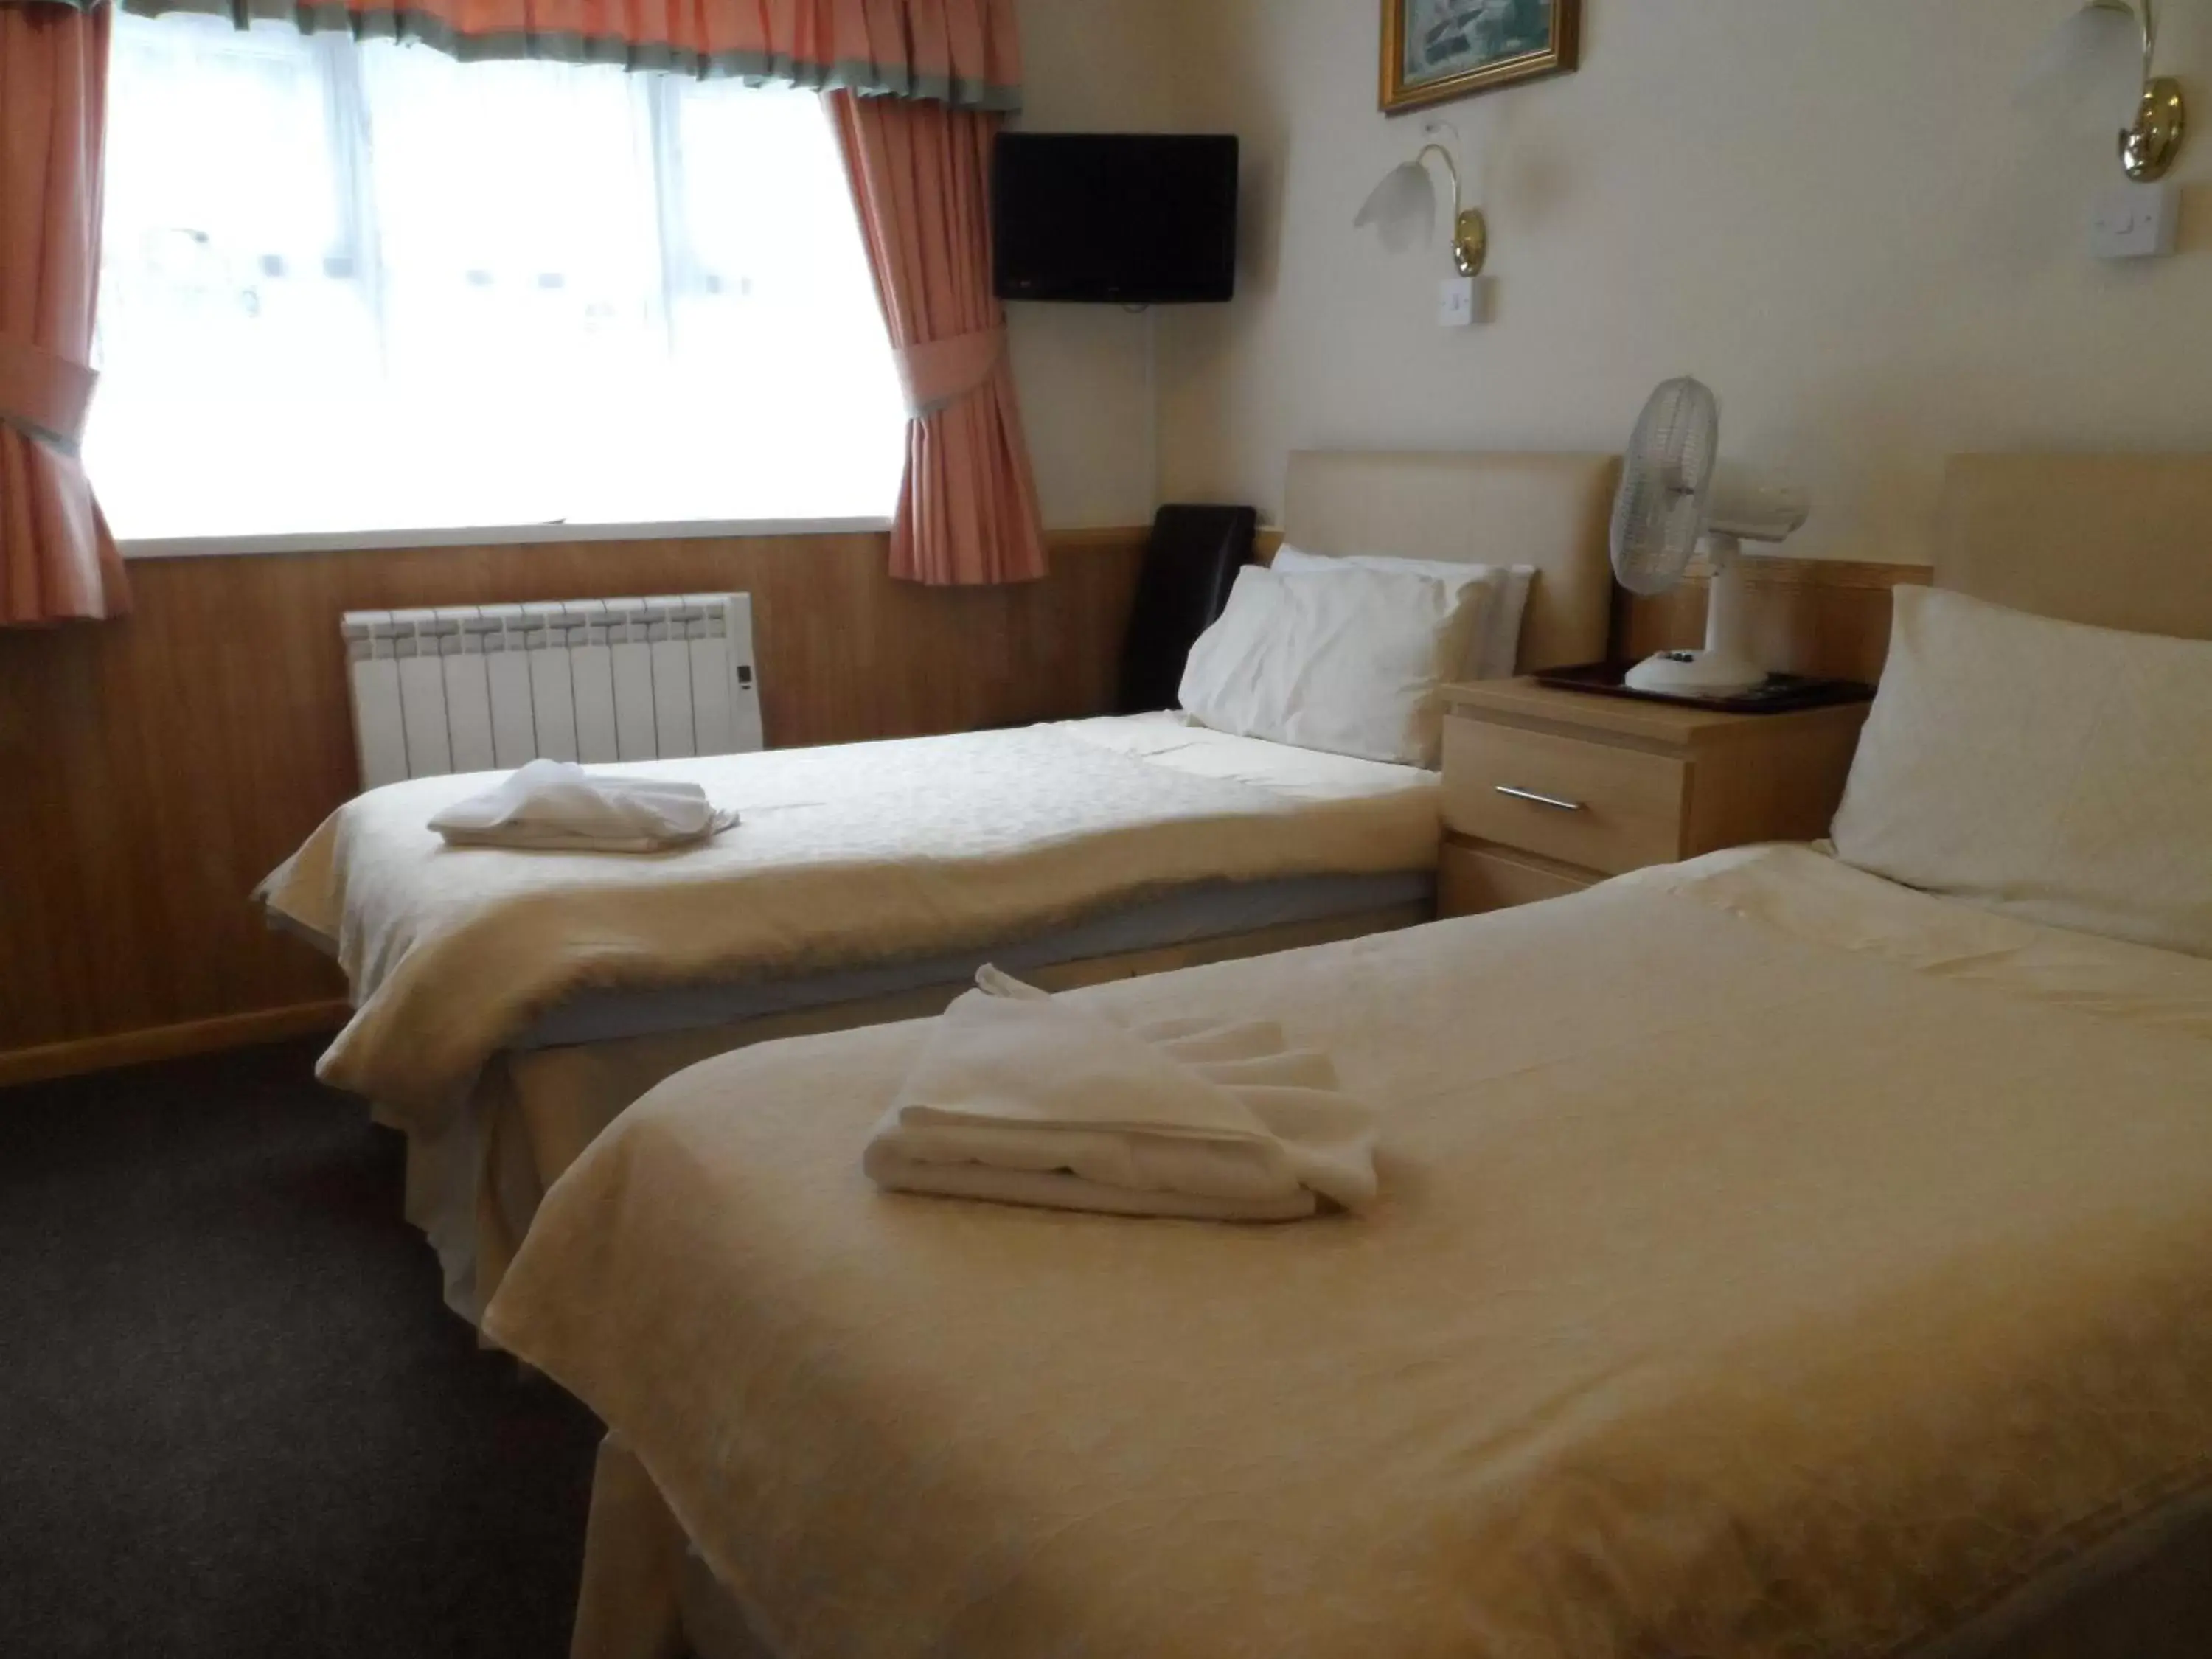 Bedroom, Bed in Queensmead Hotel